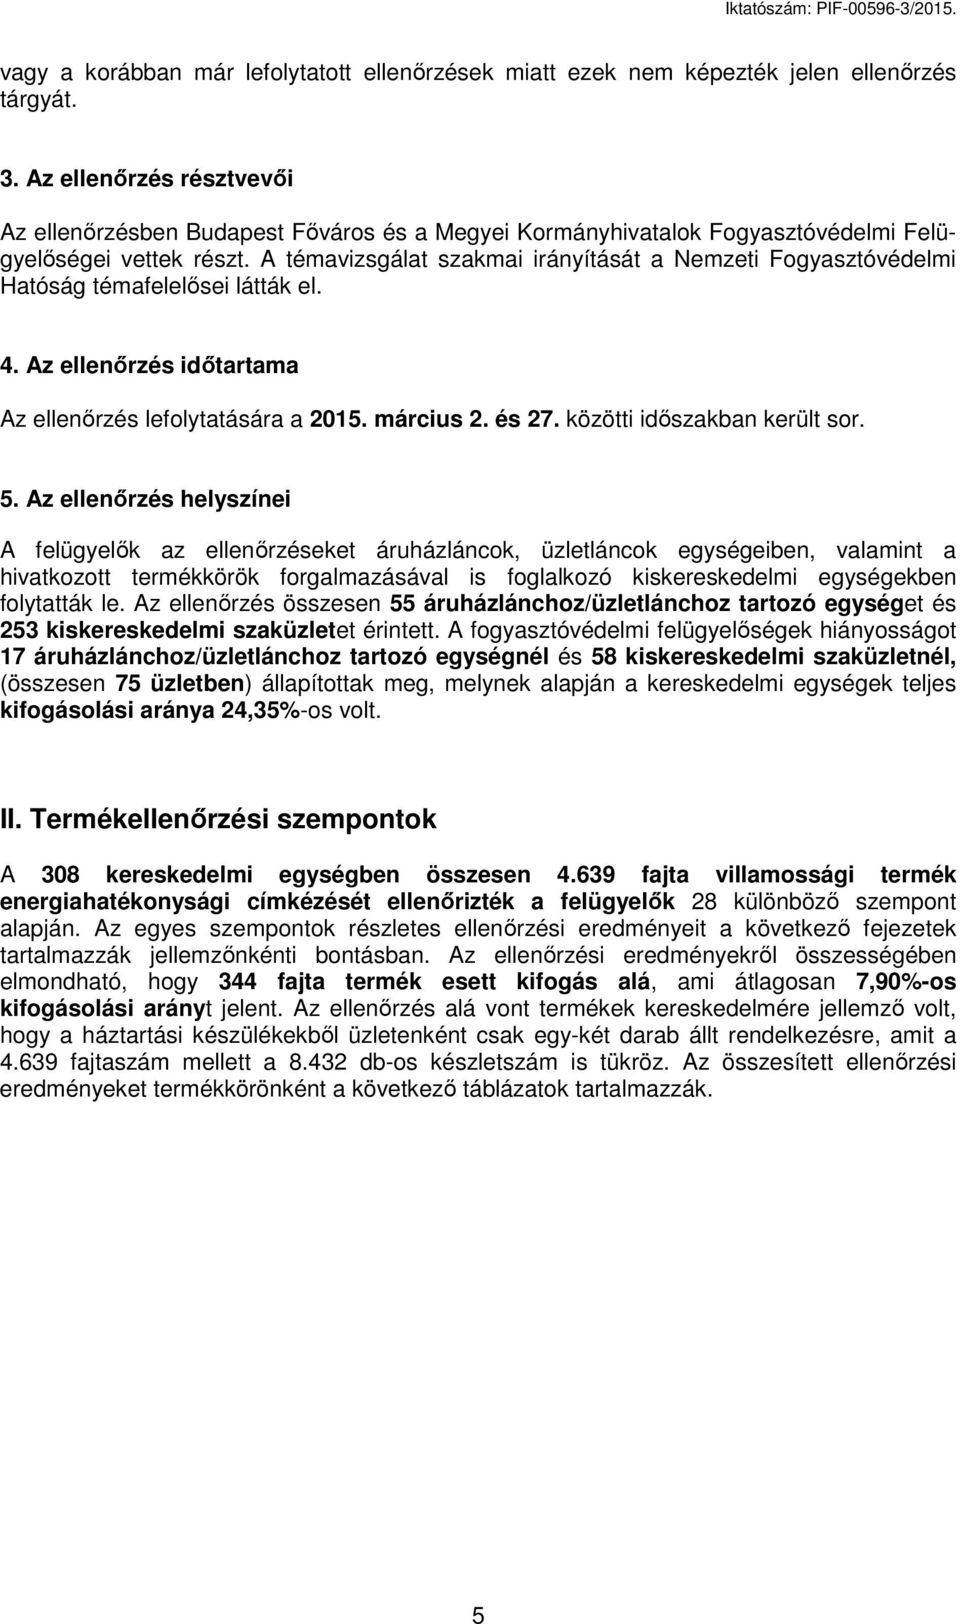 A témavizsgálat szakmai irányítását a zeti Fogyasztóvédelmi Hatóság témafelelősei látták el. 4. Az ellenőrzés időtartama Az ellenőrzés lefolytatására a 2015. március 2. és 27.